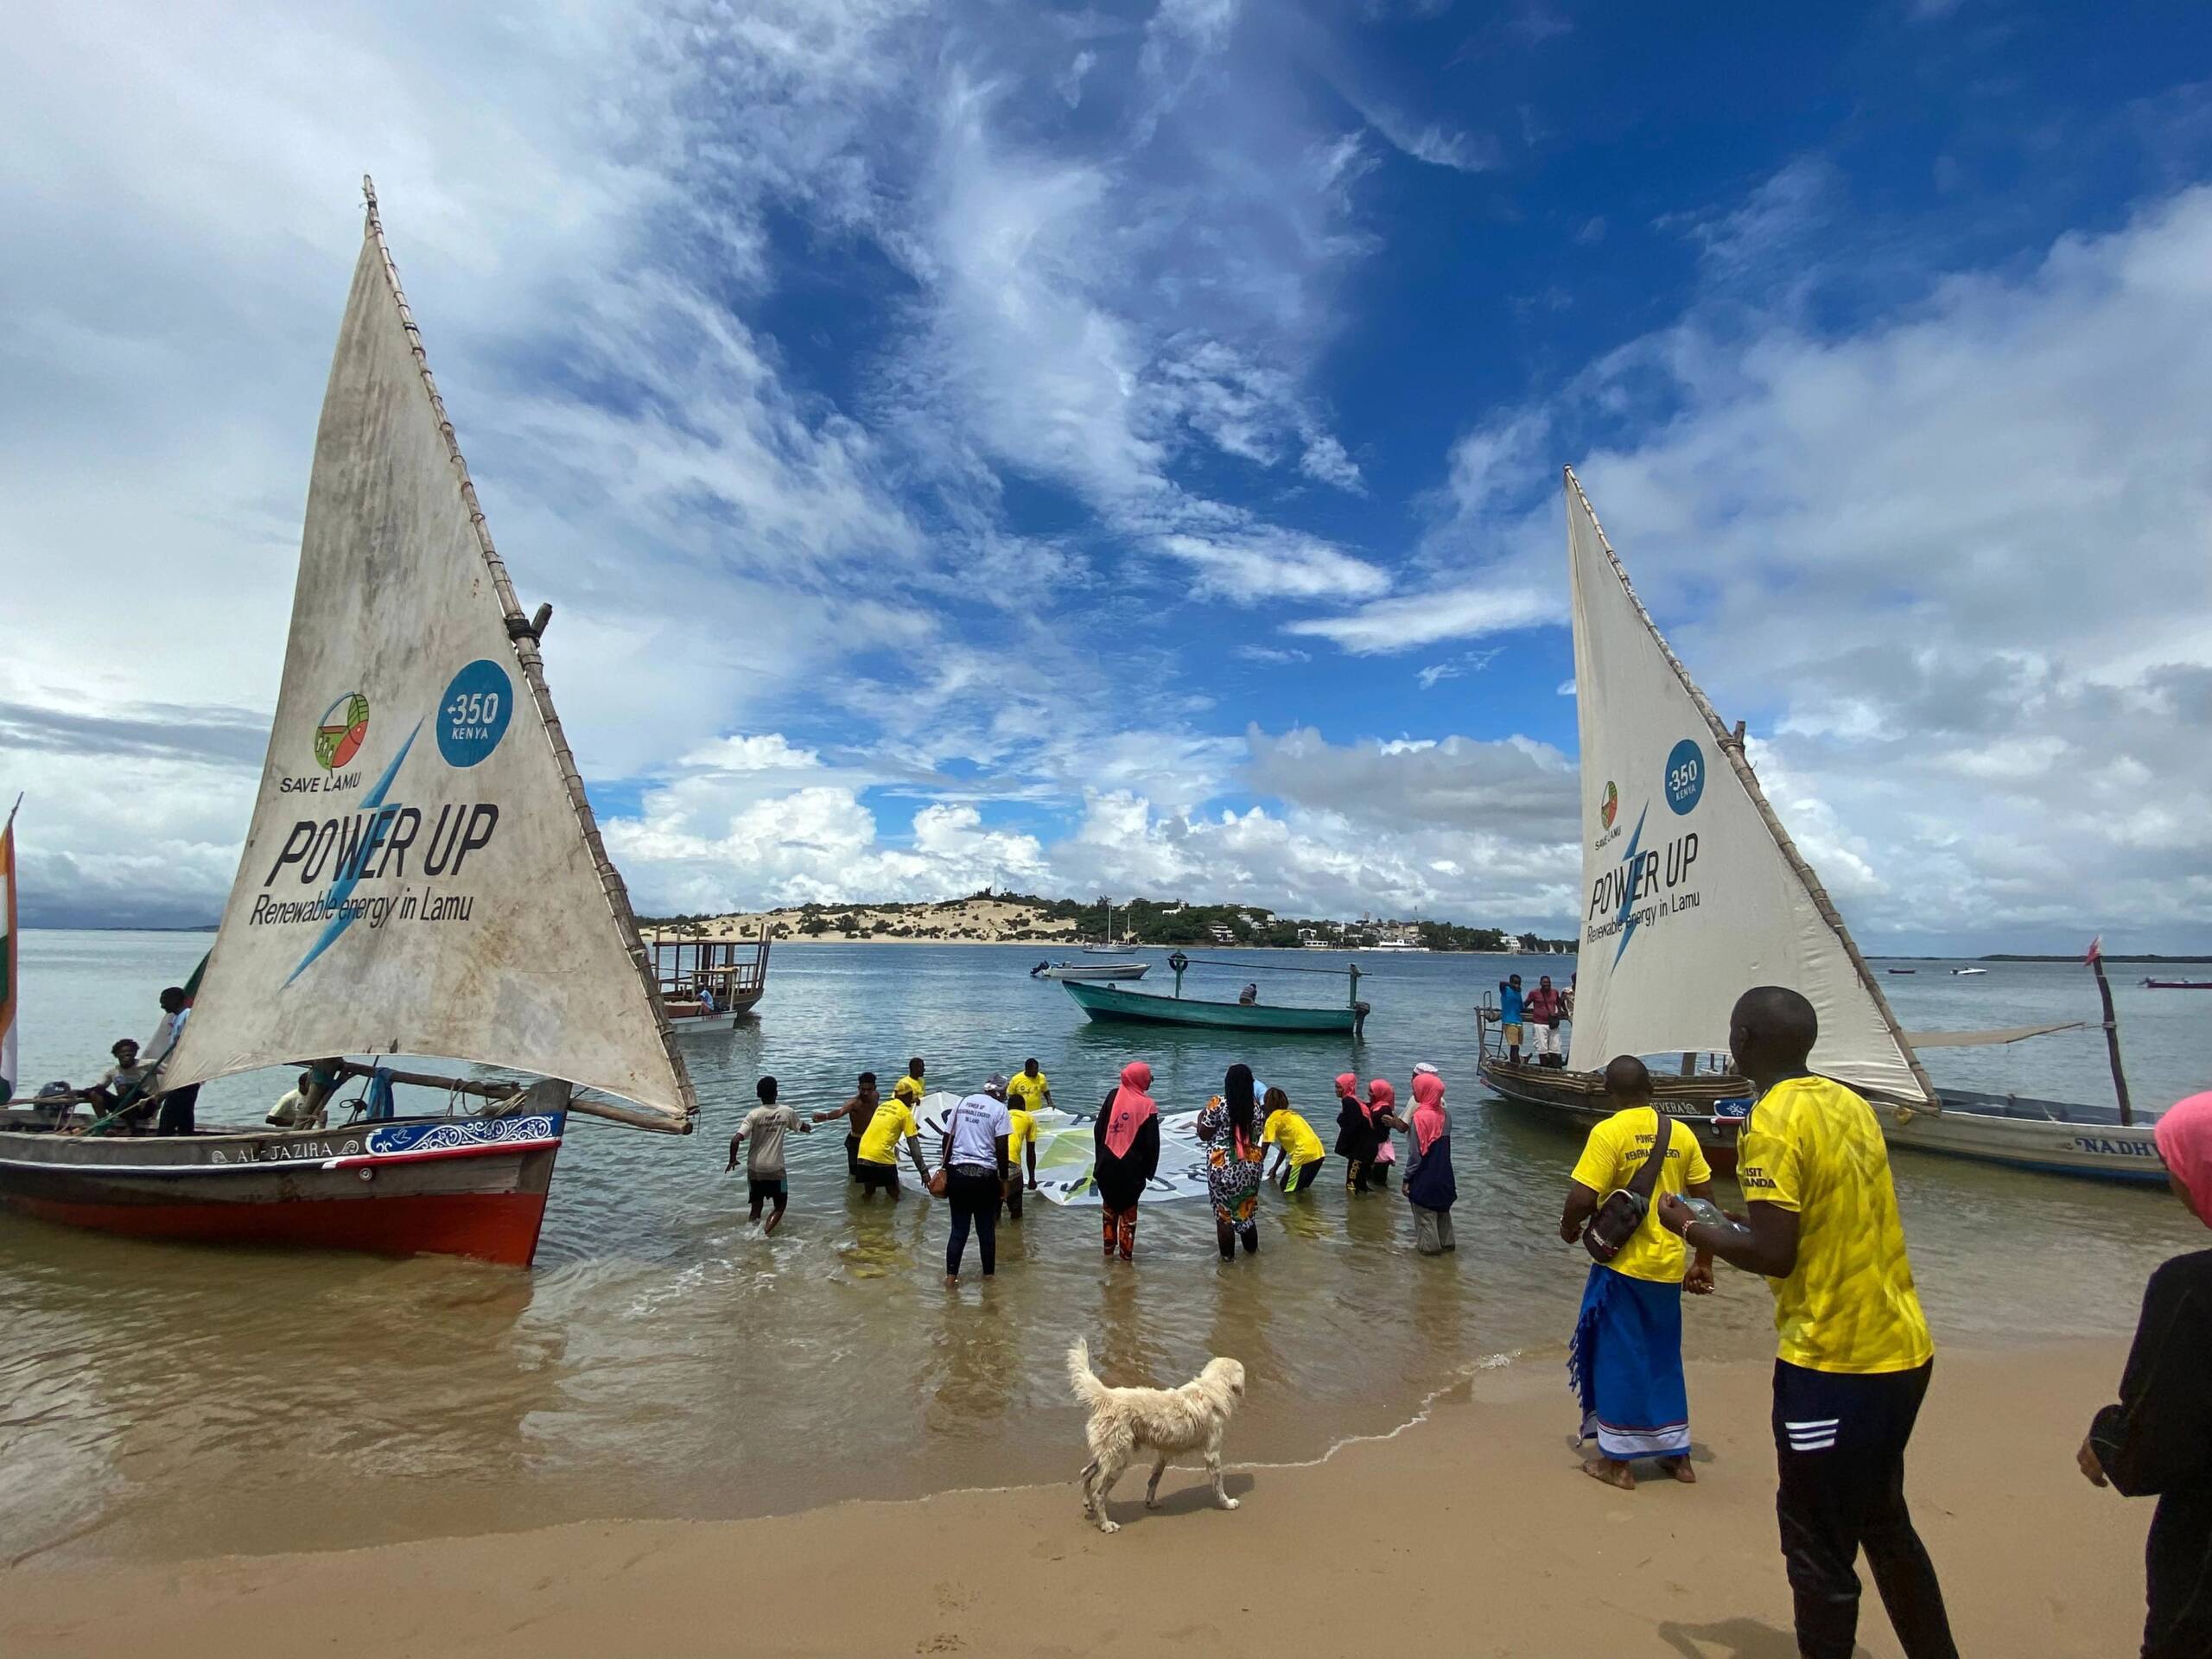 ケニア ラム 11月4日：350 Africa.orgとSave Lamuが創作の展示とダウ船（大型の木造帆船）によるレースを開催。ケニア政府に対し、真の気候リーダーシップを発揮し、ラムに再生可能エネルギーを普及させるよう求めた。写真提供：350 Africa